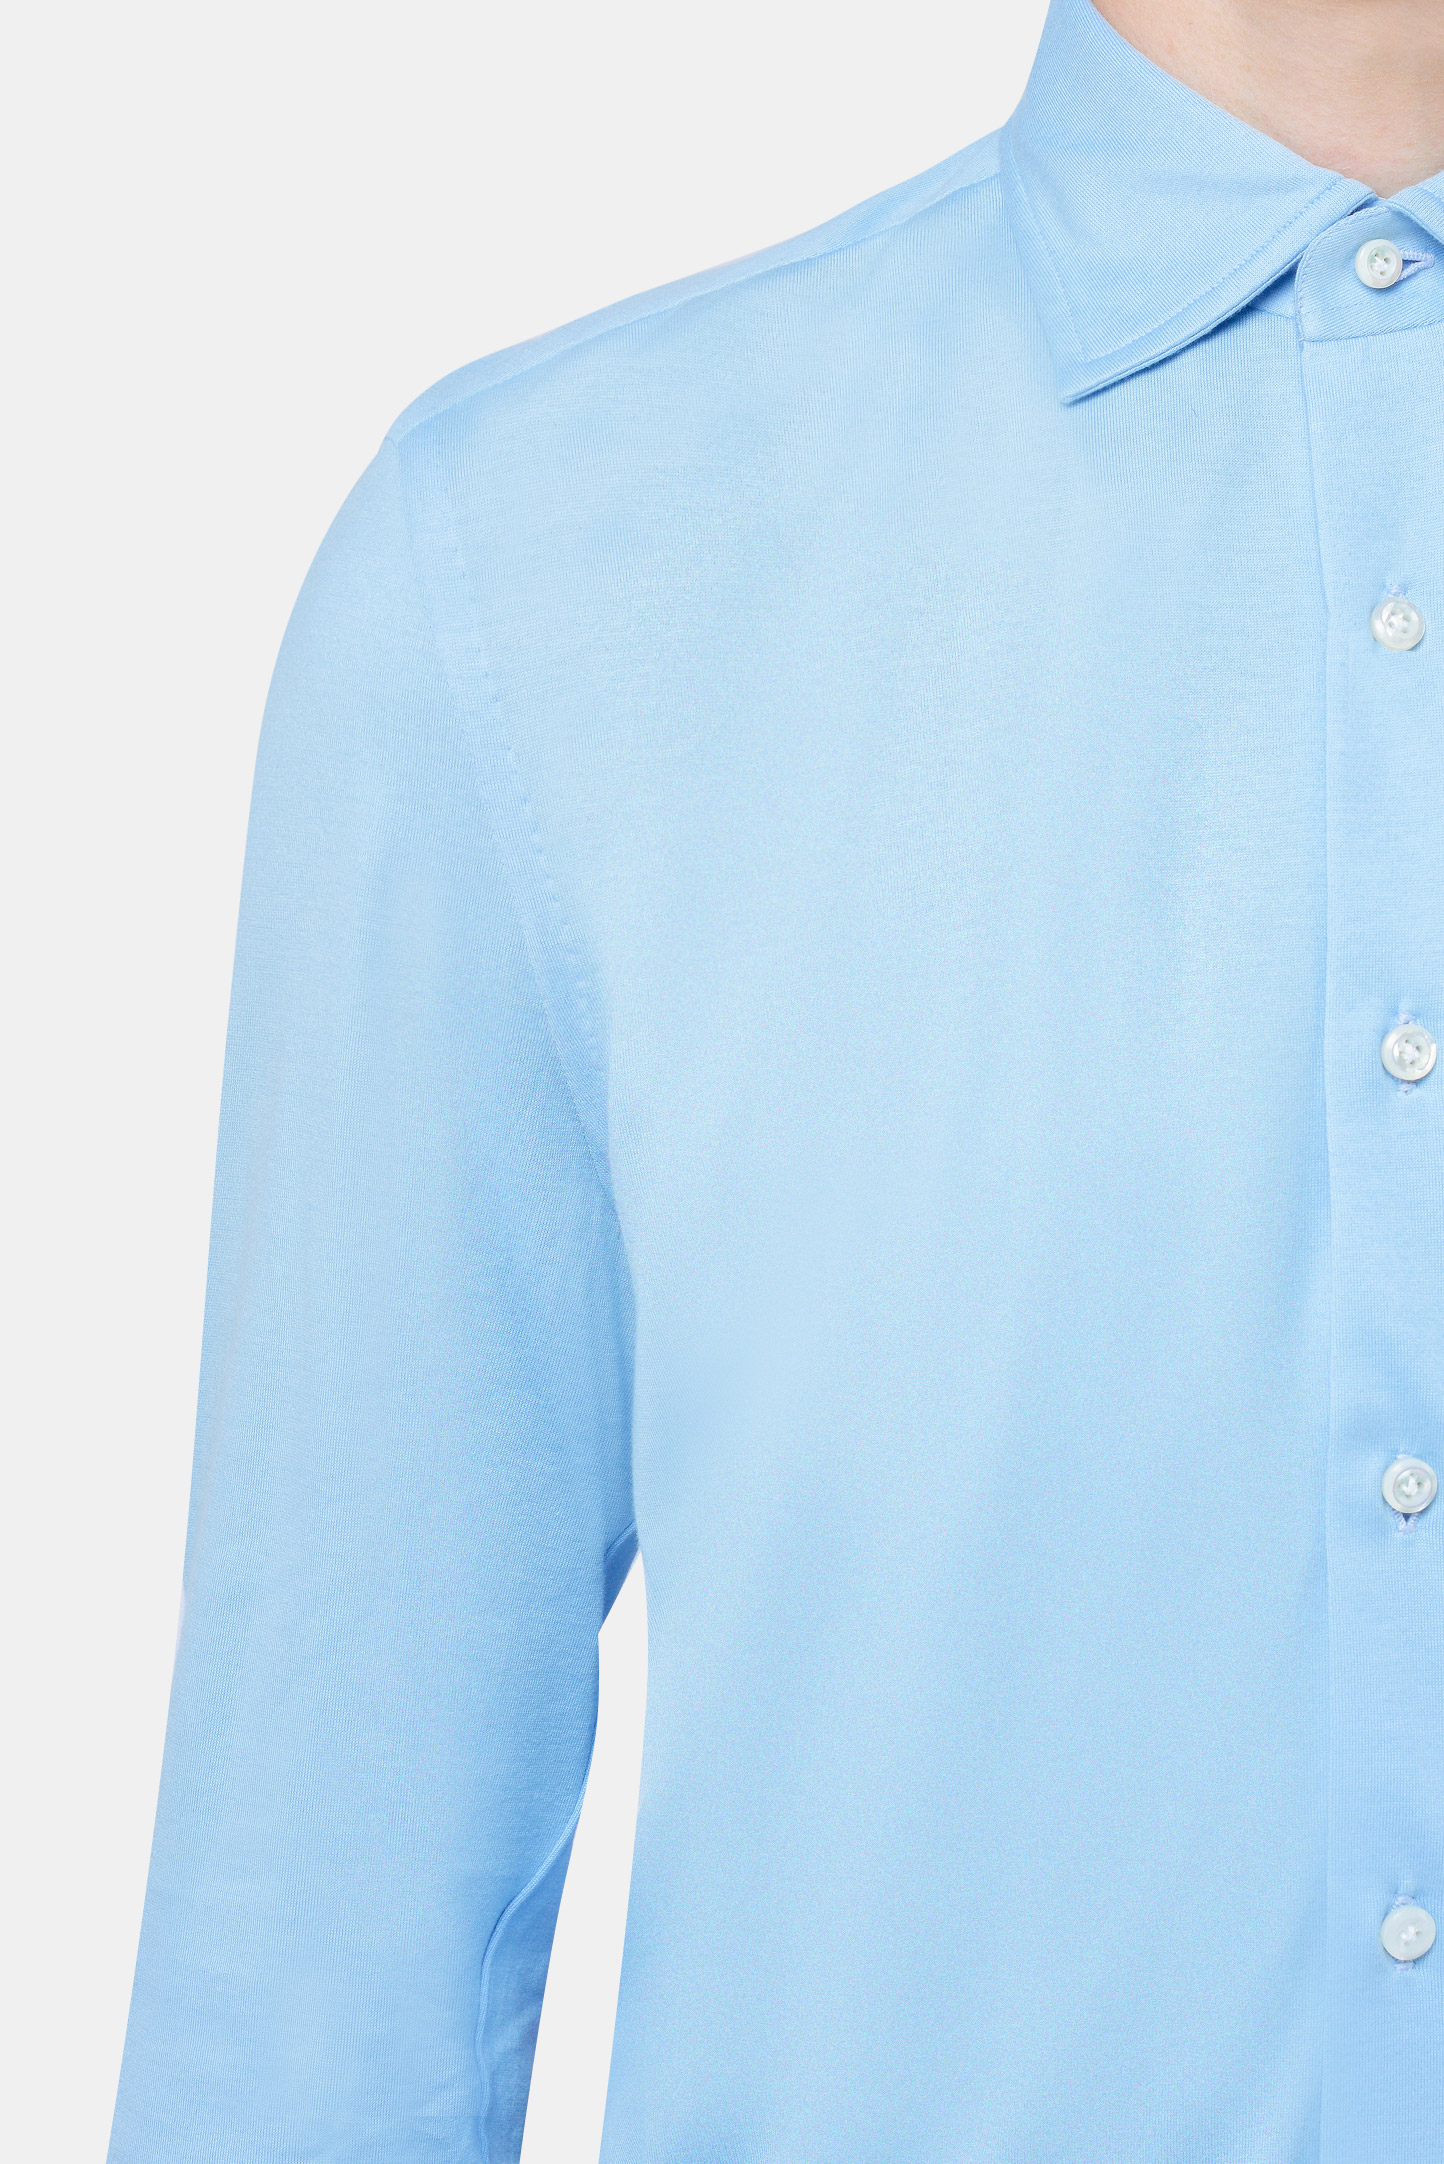 Рубашка CESARE ATTOLINI CAU28JS/MIKE S20CMJS50, цвет: Голубой, Мужской